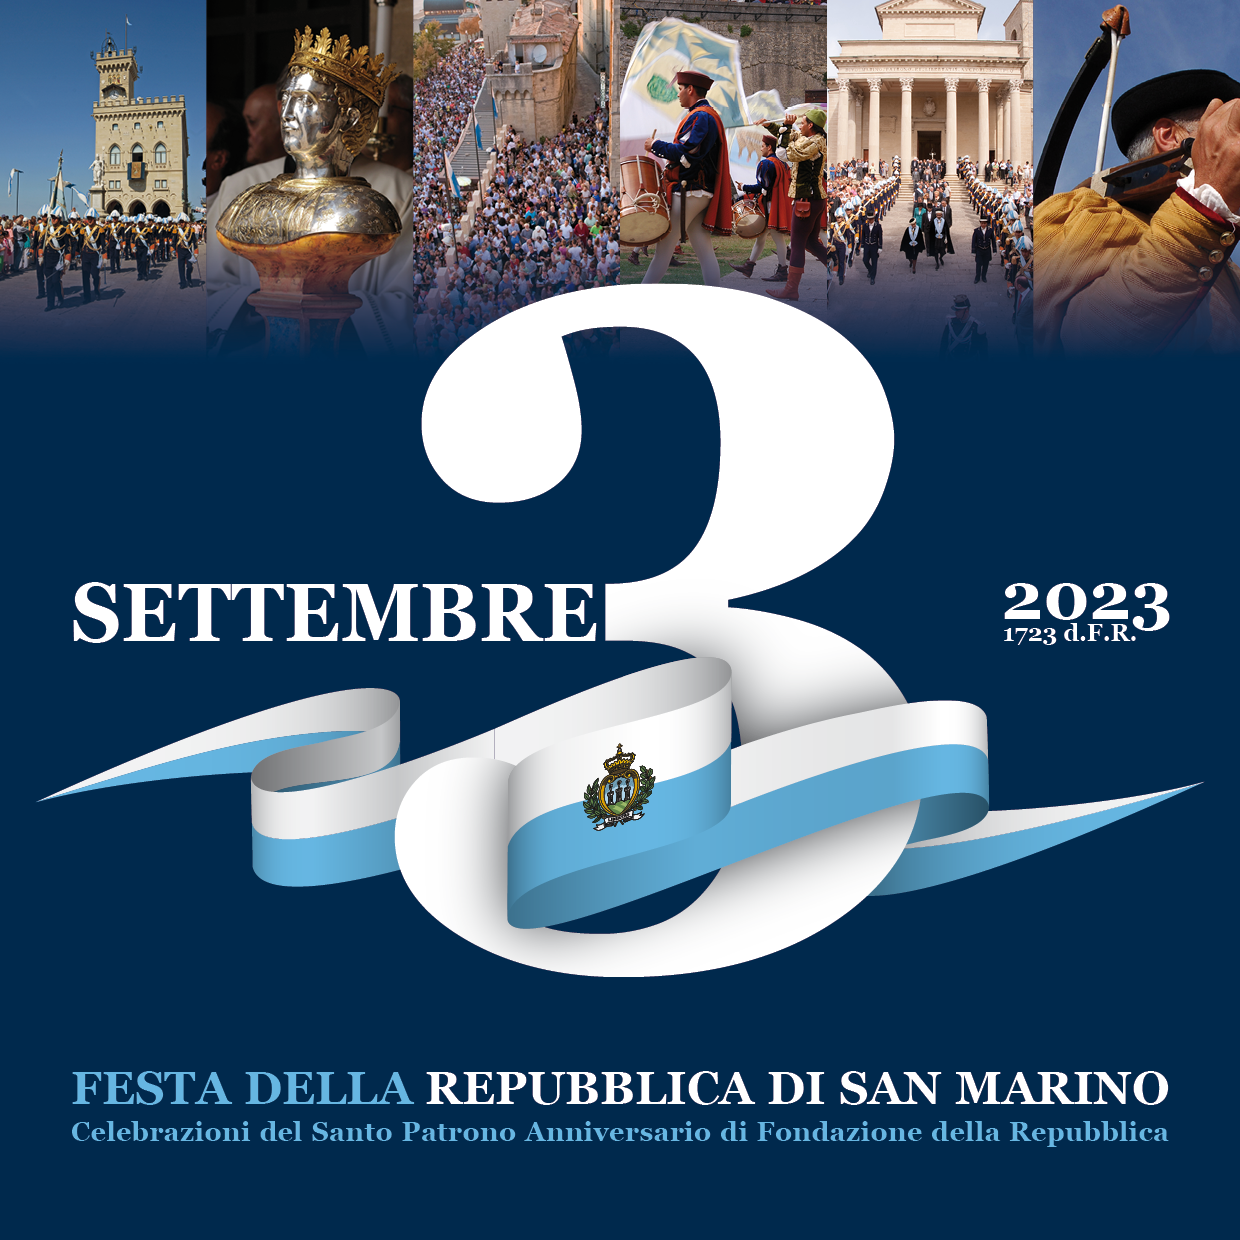 San Marino. La Repubblica celebra l’anniversario della Fondazione tra tradizione, musica, spettacoli